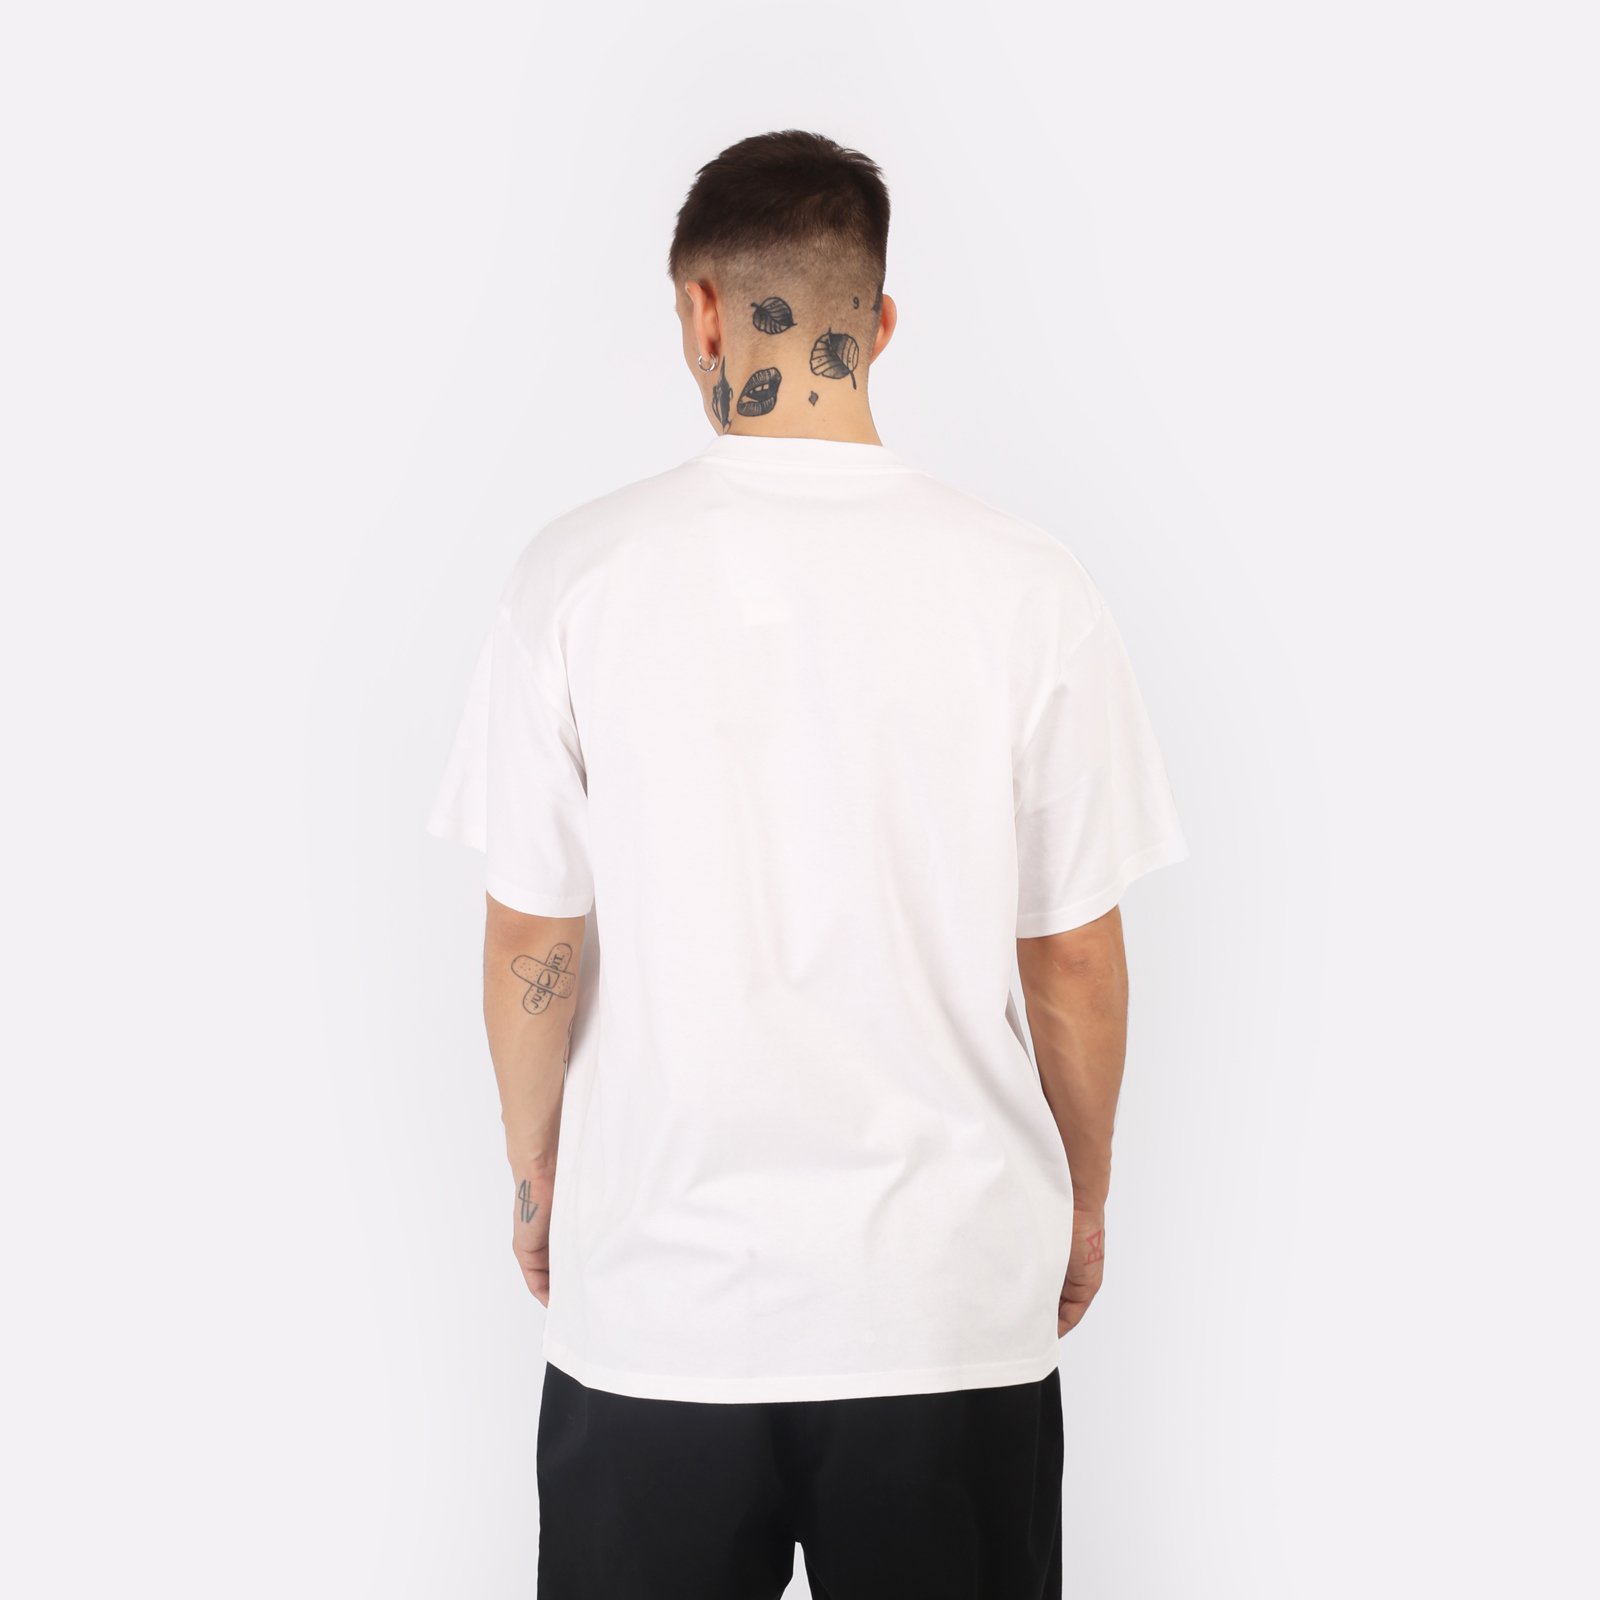 мужская белая футболка Carhartt WIP S/S Smart Sports T-Shirt I033121-white - цена, описание, фото 2